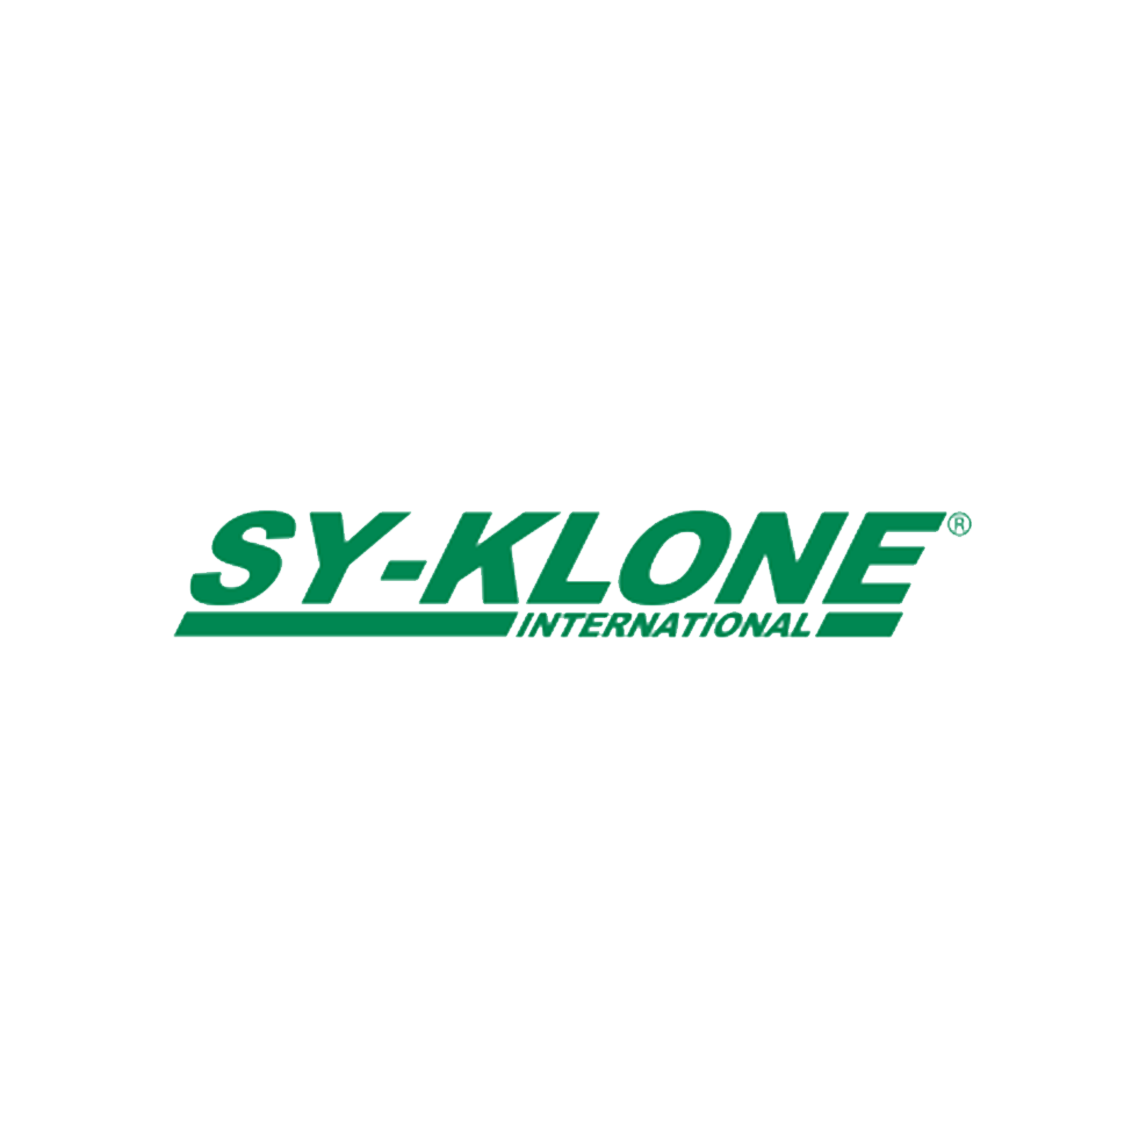 Sy-klone